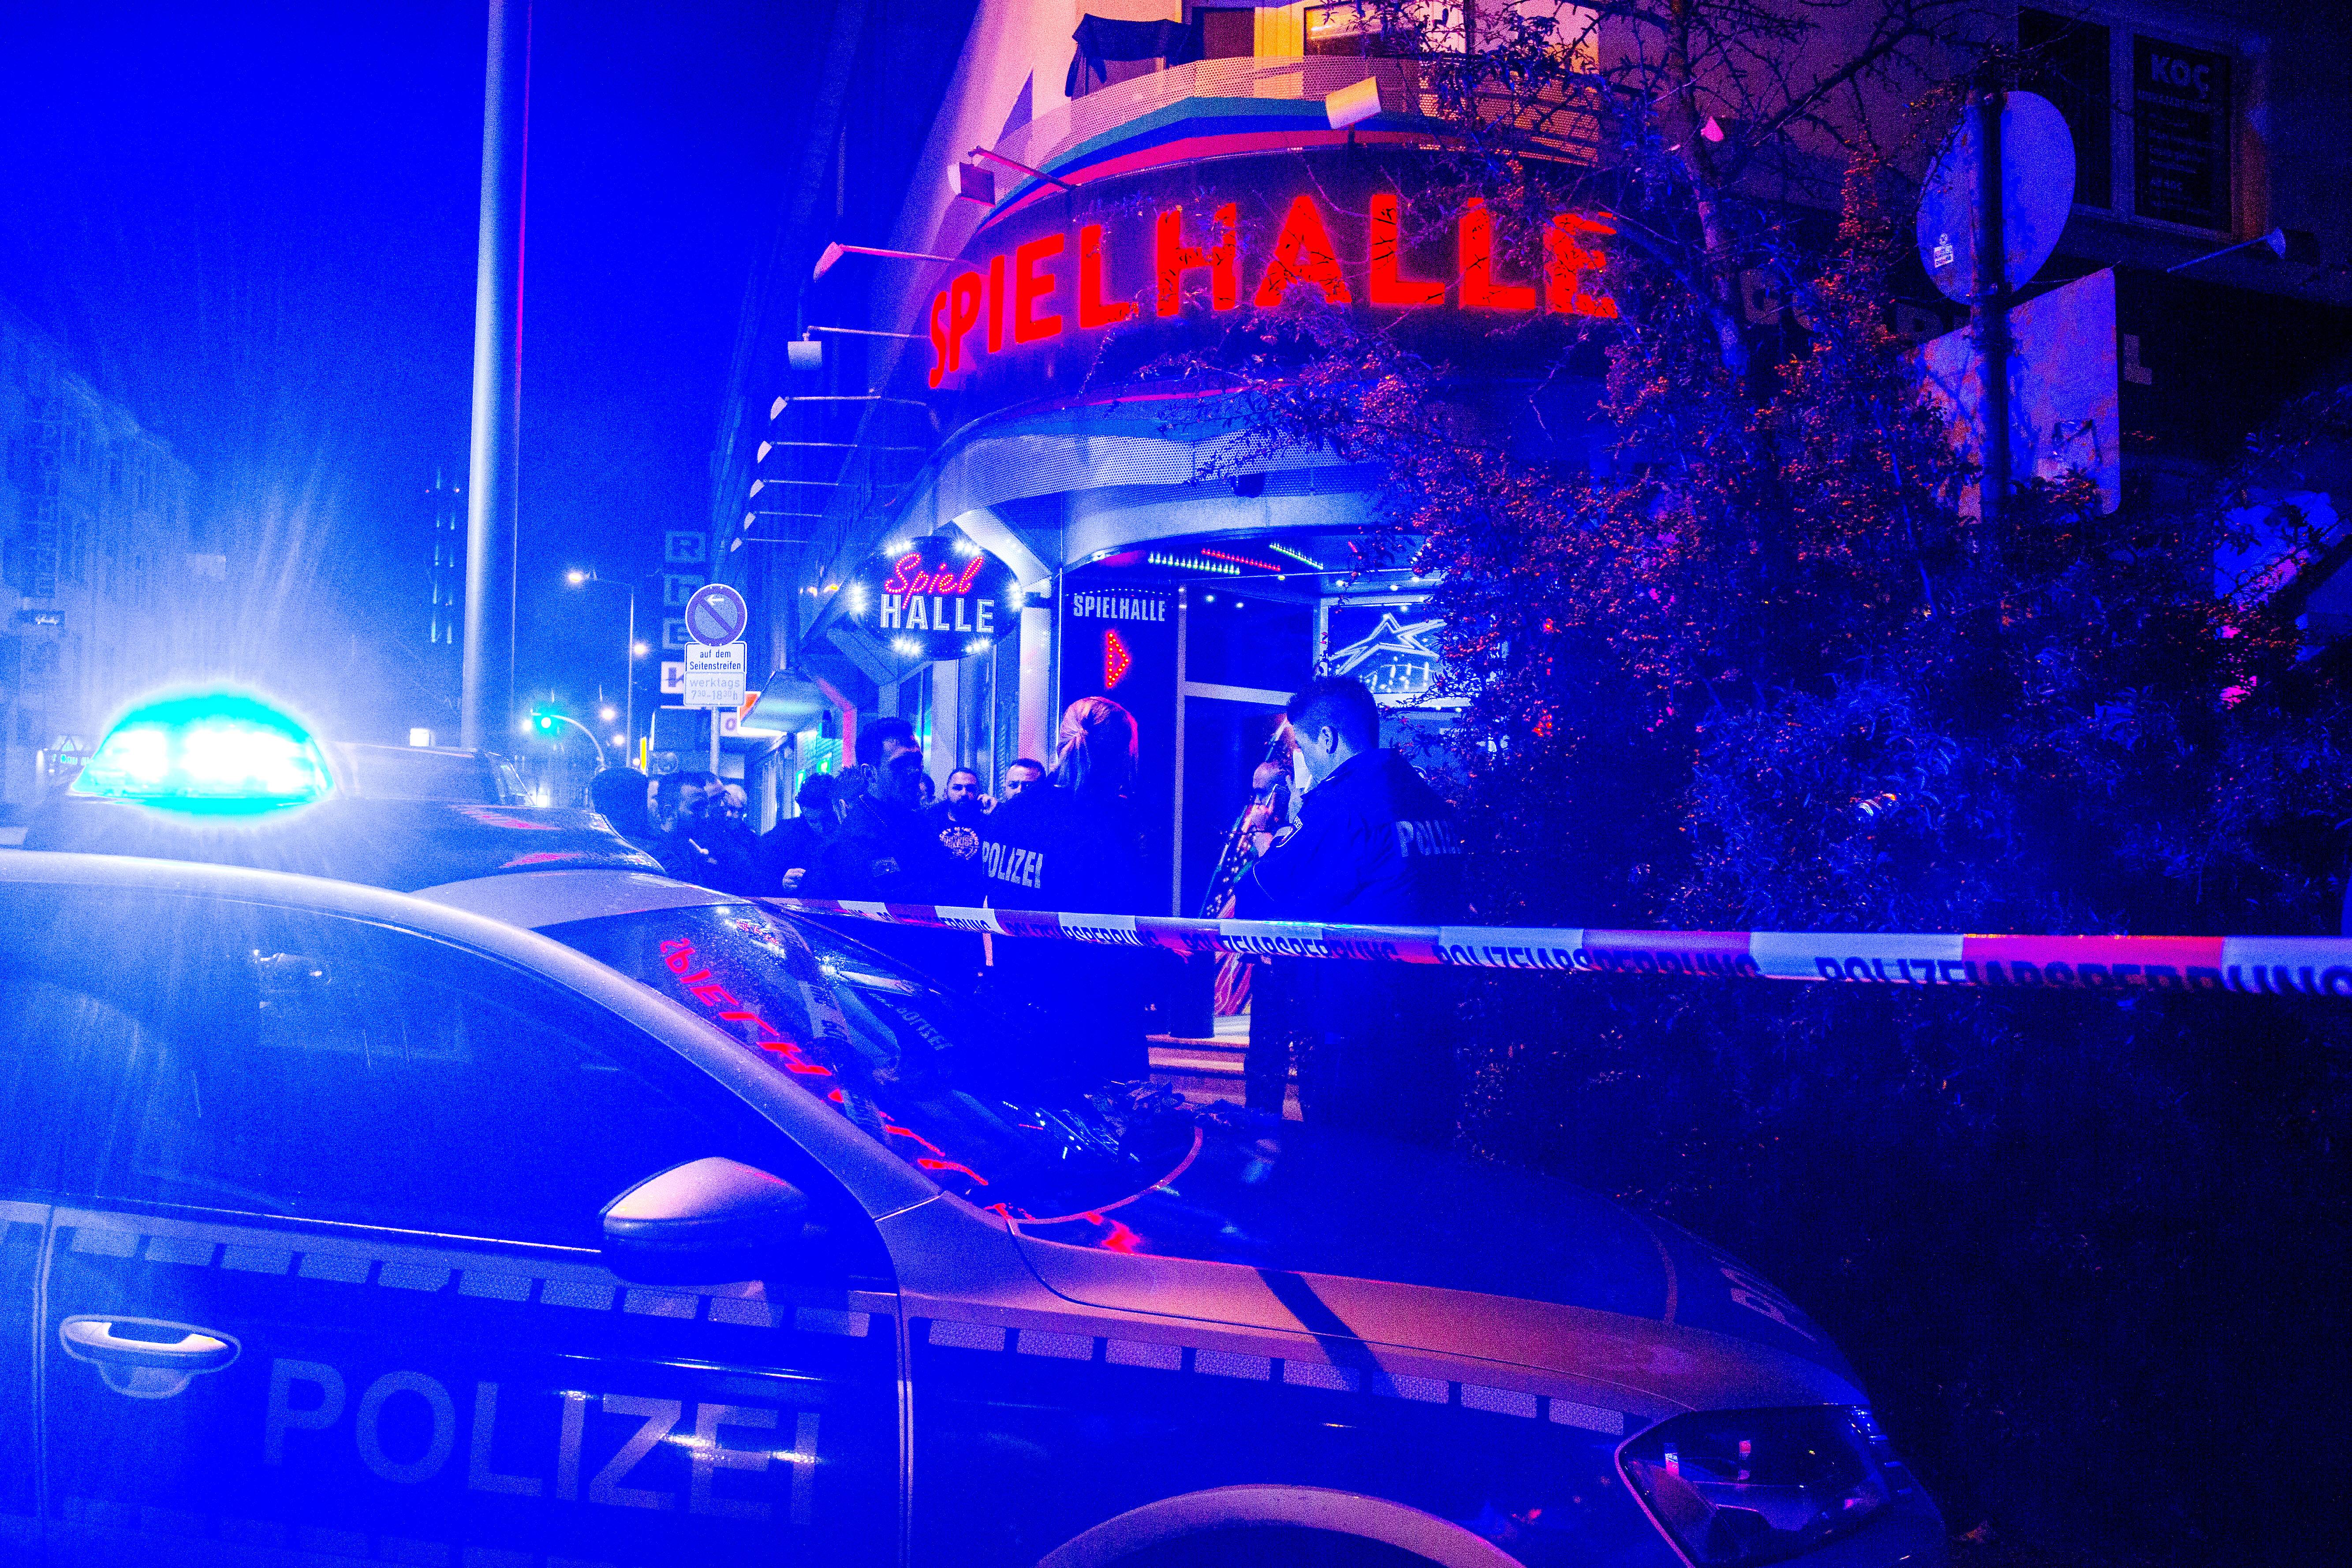 Schüsse in Krefeld - Radfahrer eiskalt erschossen! Unbekannter Täter bewaffnet auf der Flucht!